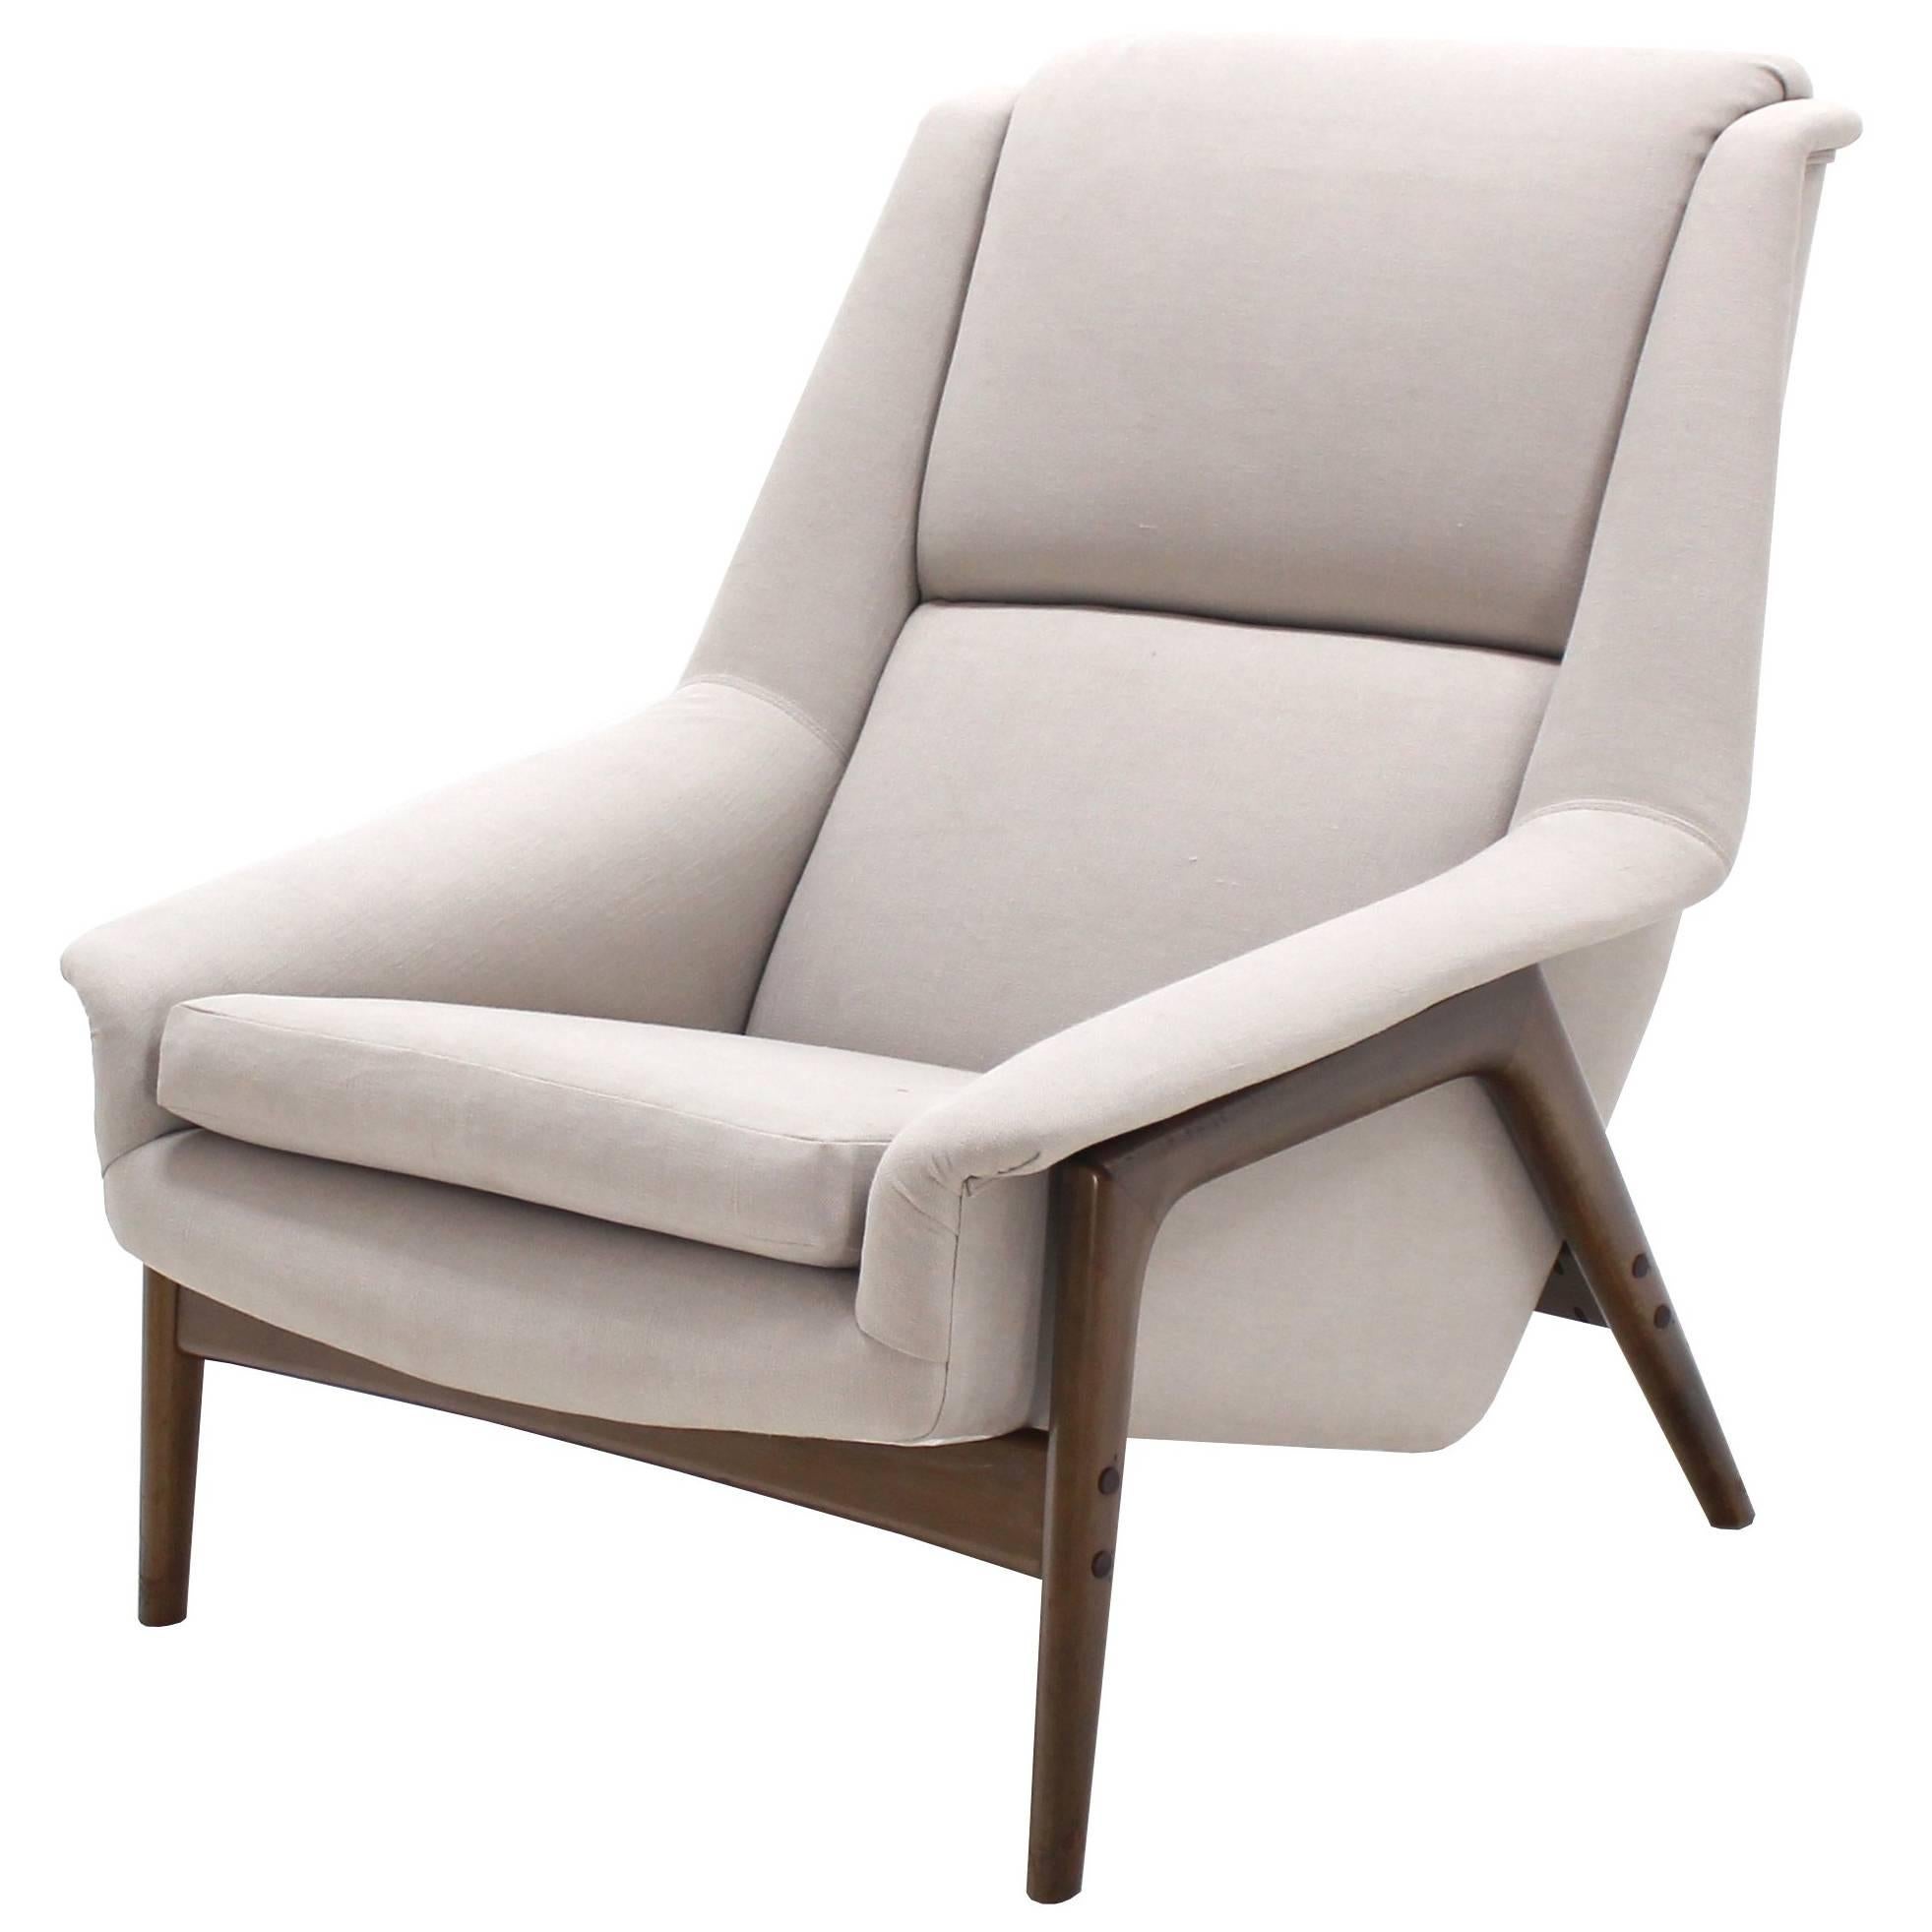 Danish Mid Century Modern New Upholstery Lounge Chair Teak Frame